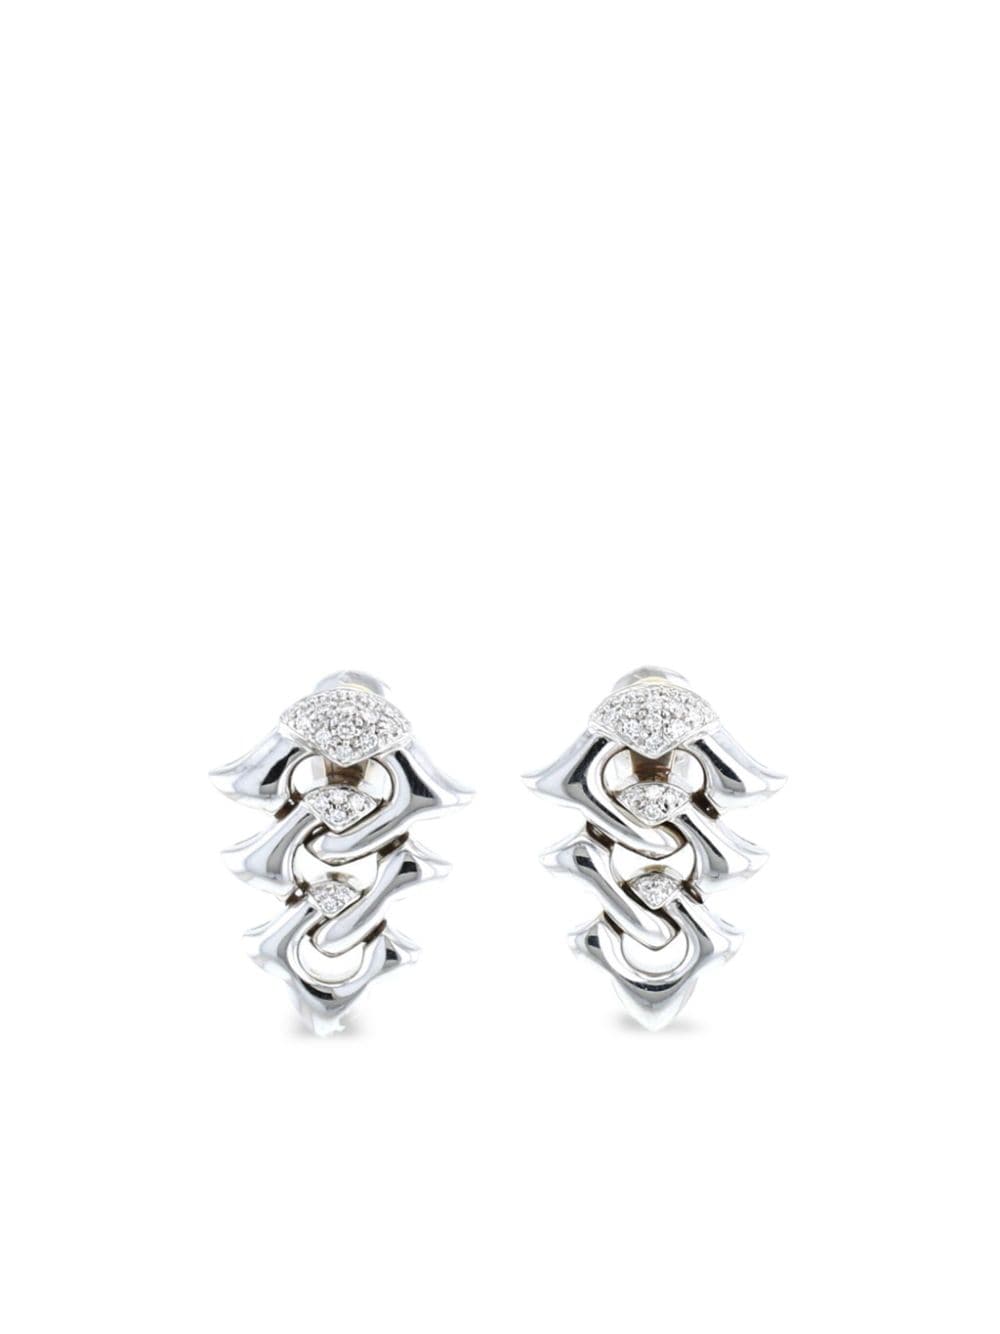 2000s 18kt white gold diamond earrings